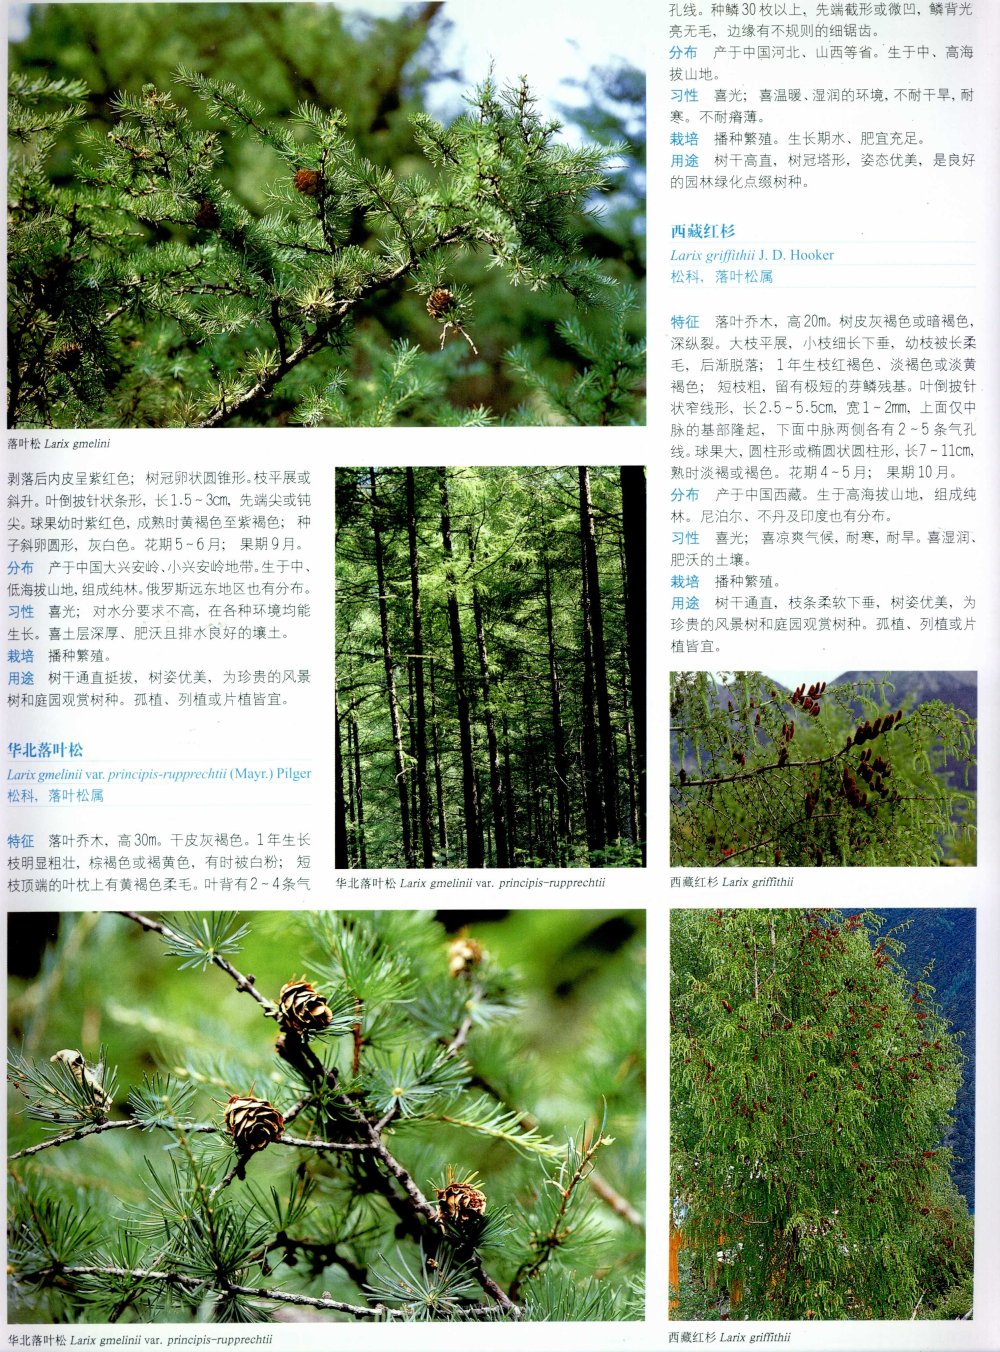 中国景观植物上(上)--H_0115.jpg